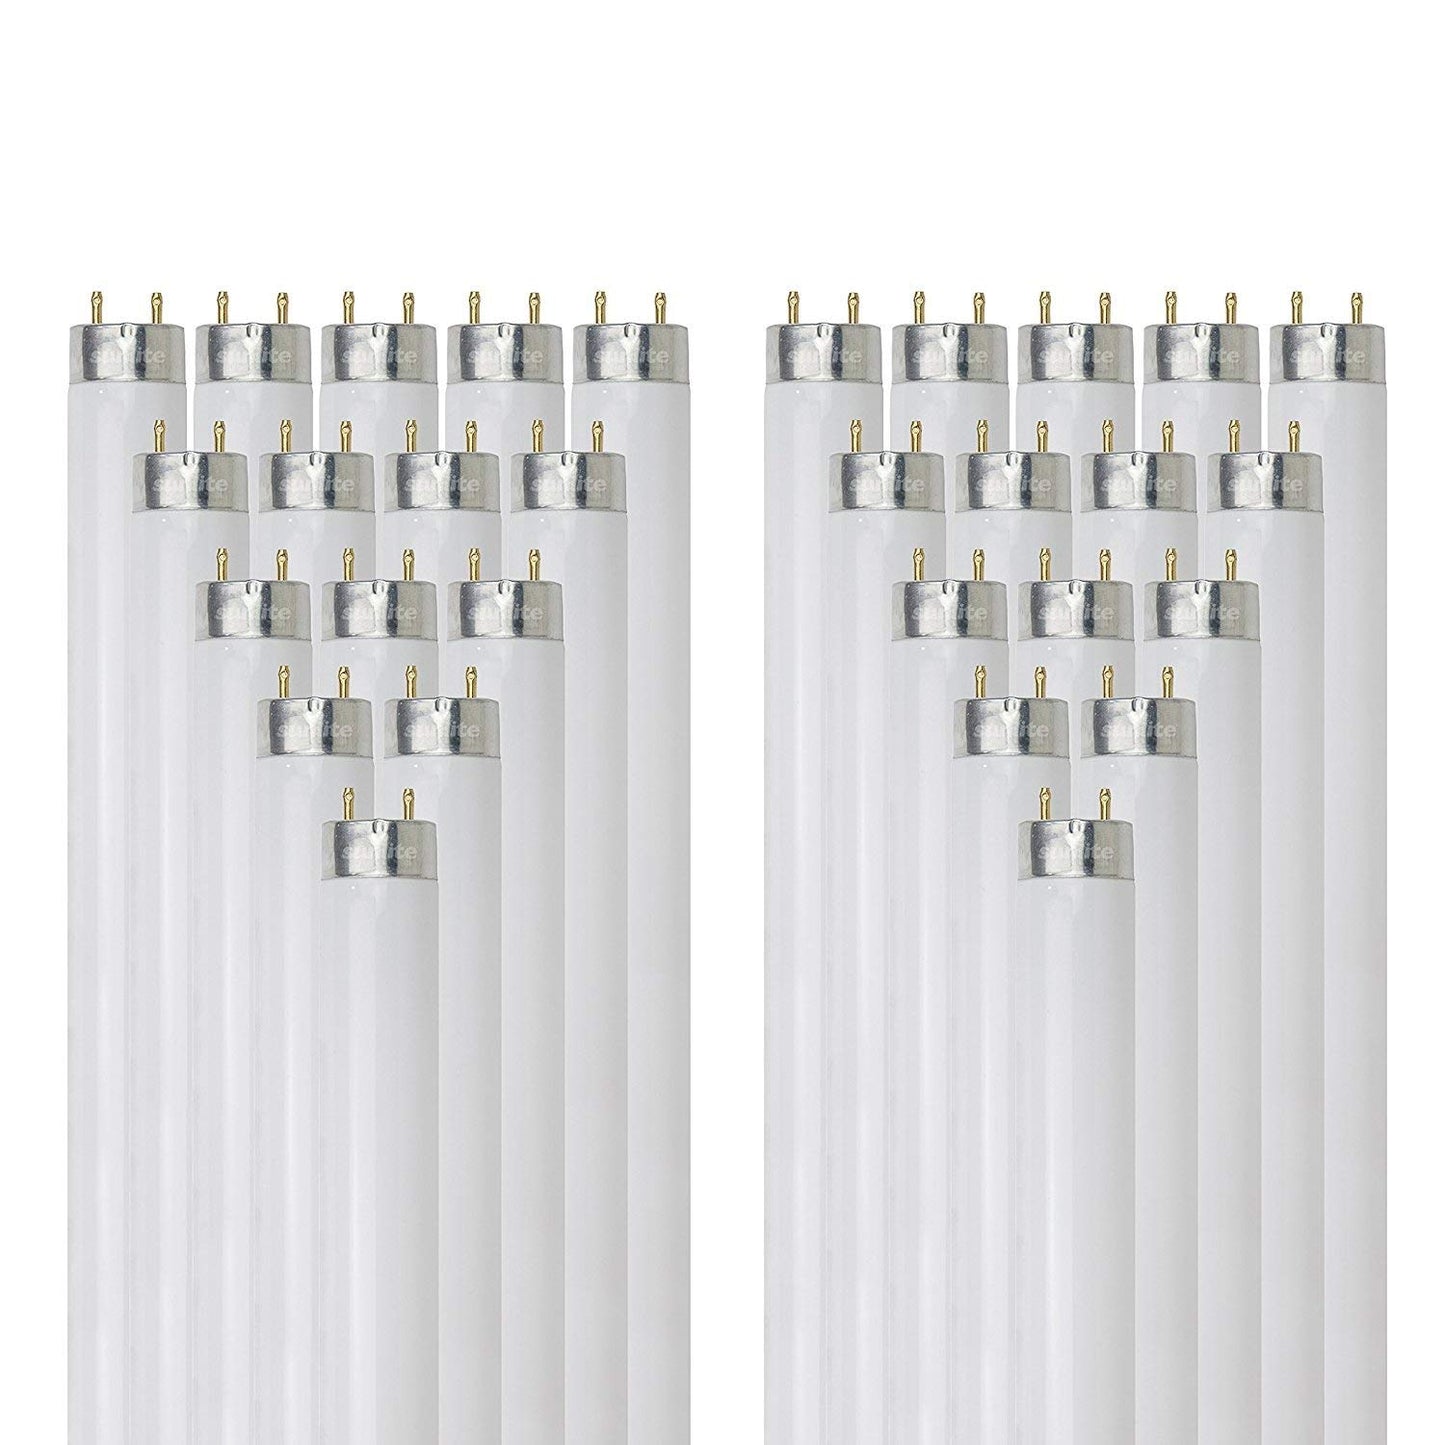 Sunlite F32T8/HL/SP841 32 Watt T8 TUBE Lamp Medium Bi-Pin (G13) Base Cool White